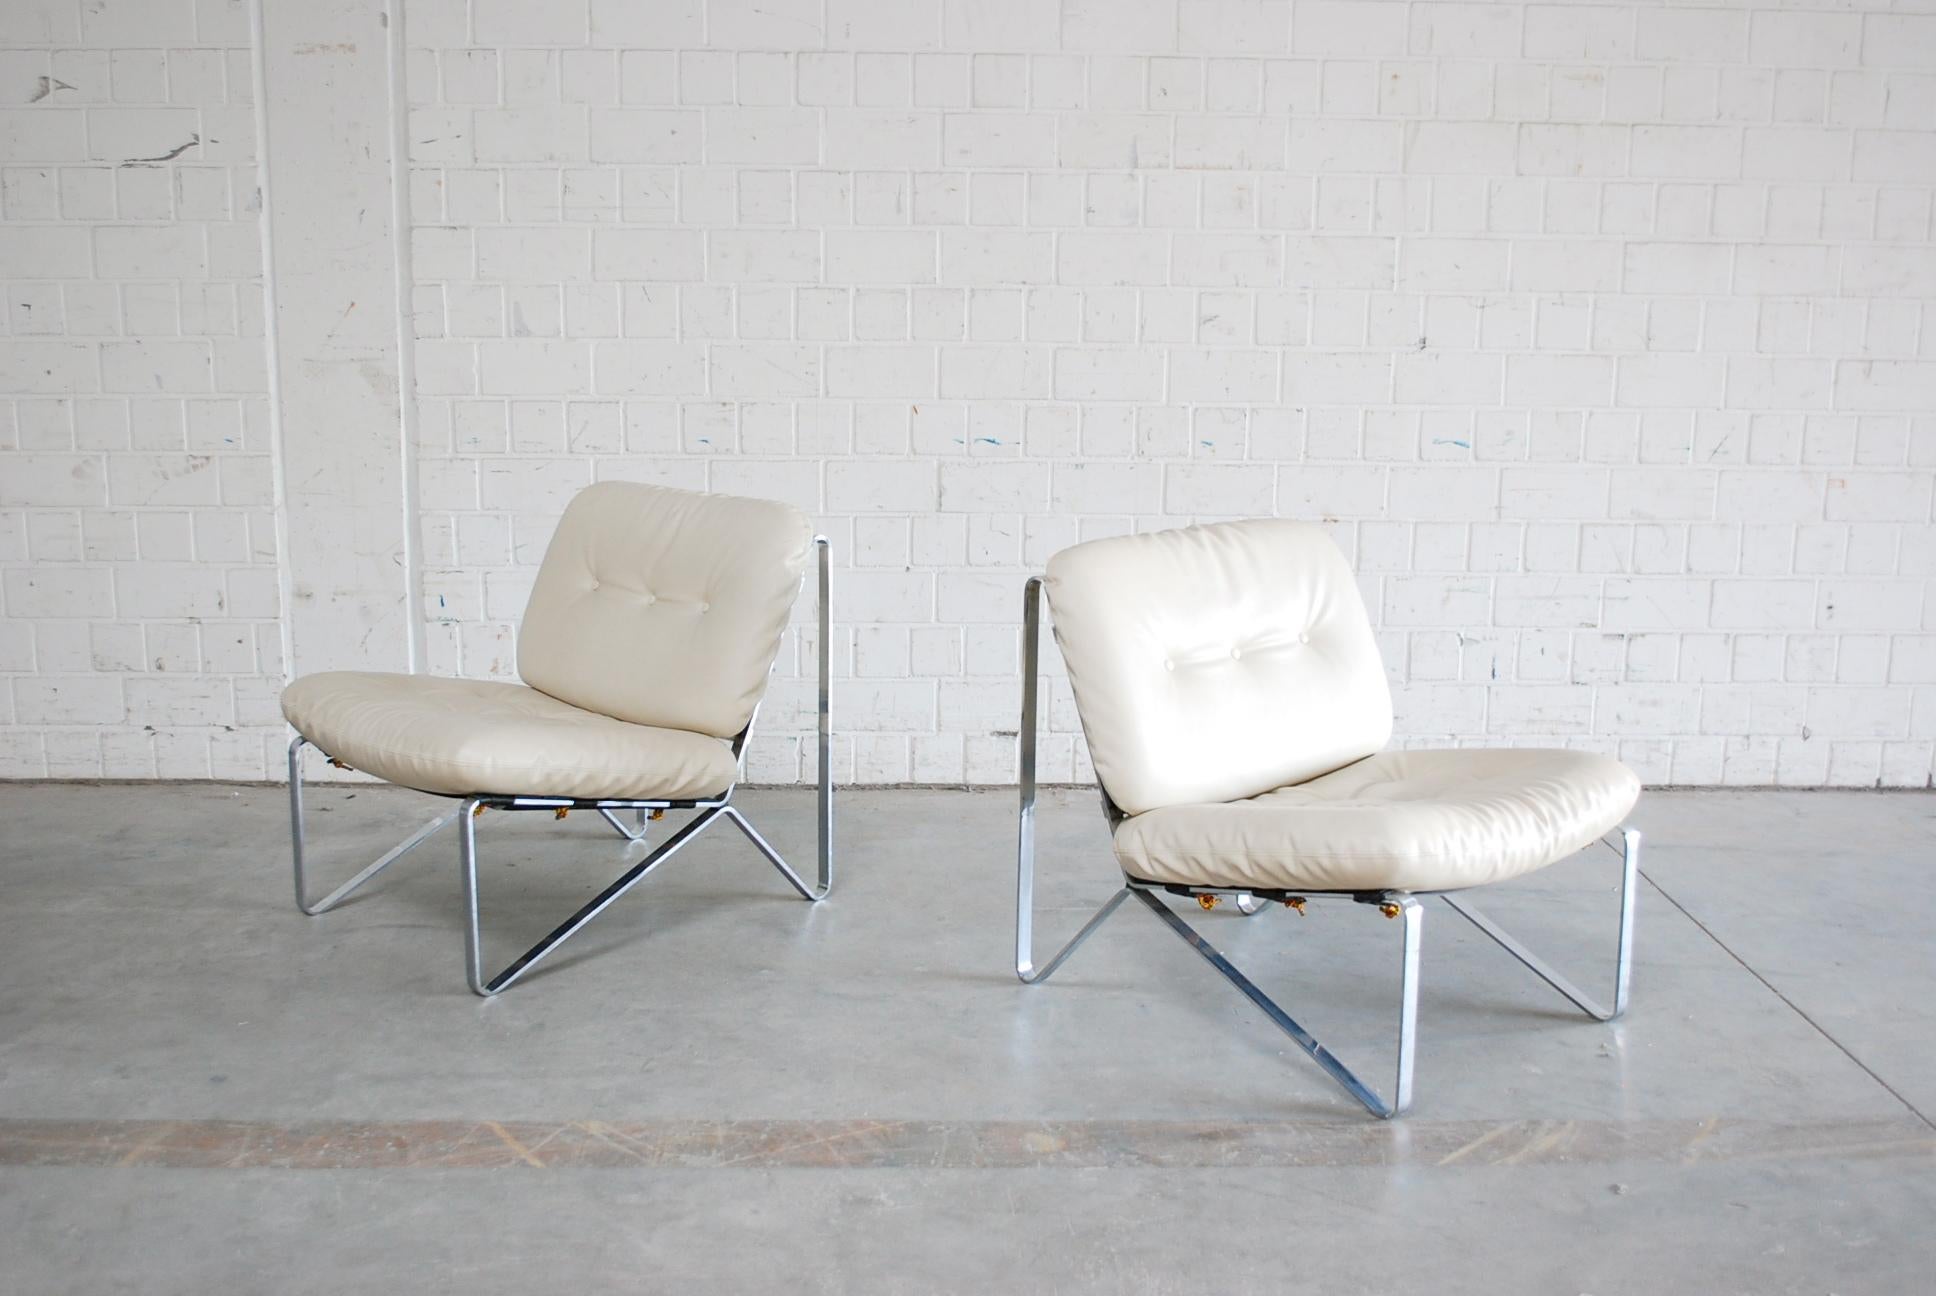 Cet ensemble de deux fauteuils a été conçu par Hartmut Lohmeyer dans les années 1960 et fabriqué par la manufacture allemande Mauser Werke Waldeck.
Rare et difficile à trouver.
Ils sont dotés d'un cadre en acier chromé et d'un revêtement en cuir